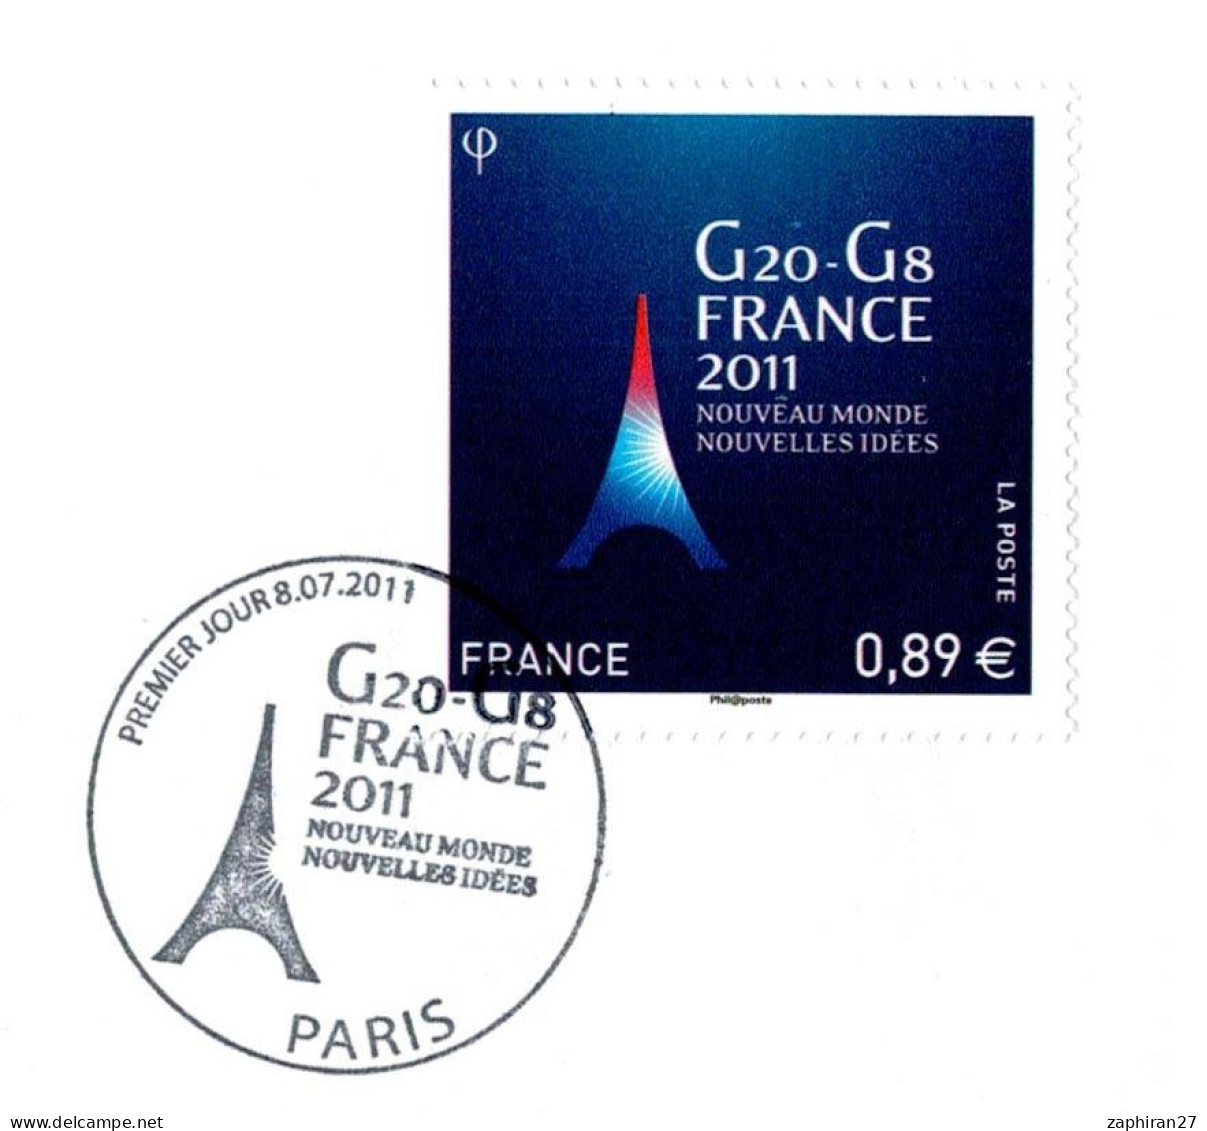 ORGANISATION PARIS G20 G8 FRANCE 2011 NOUVEAU MONDE NOUVELLES IDEES (8-7-2011) #434# - Other & Unclassified